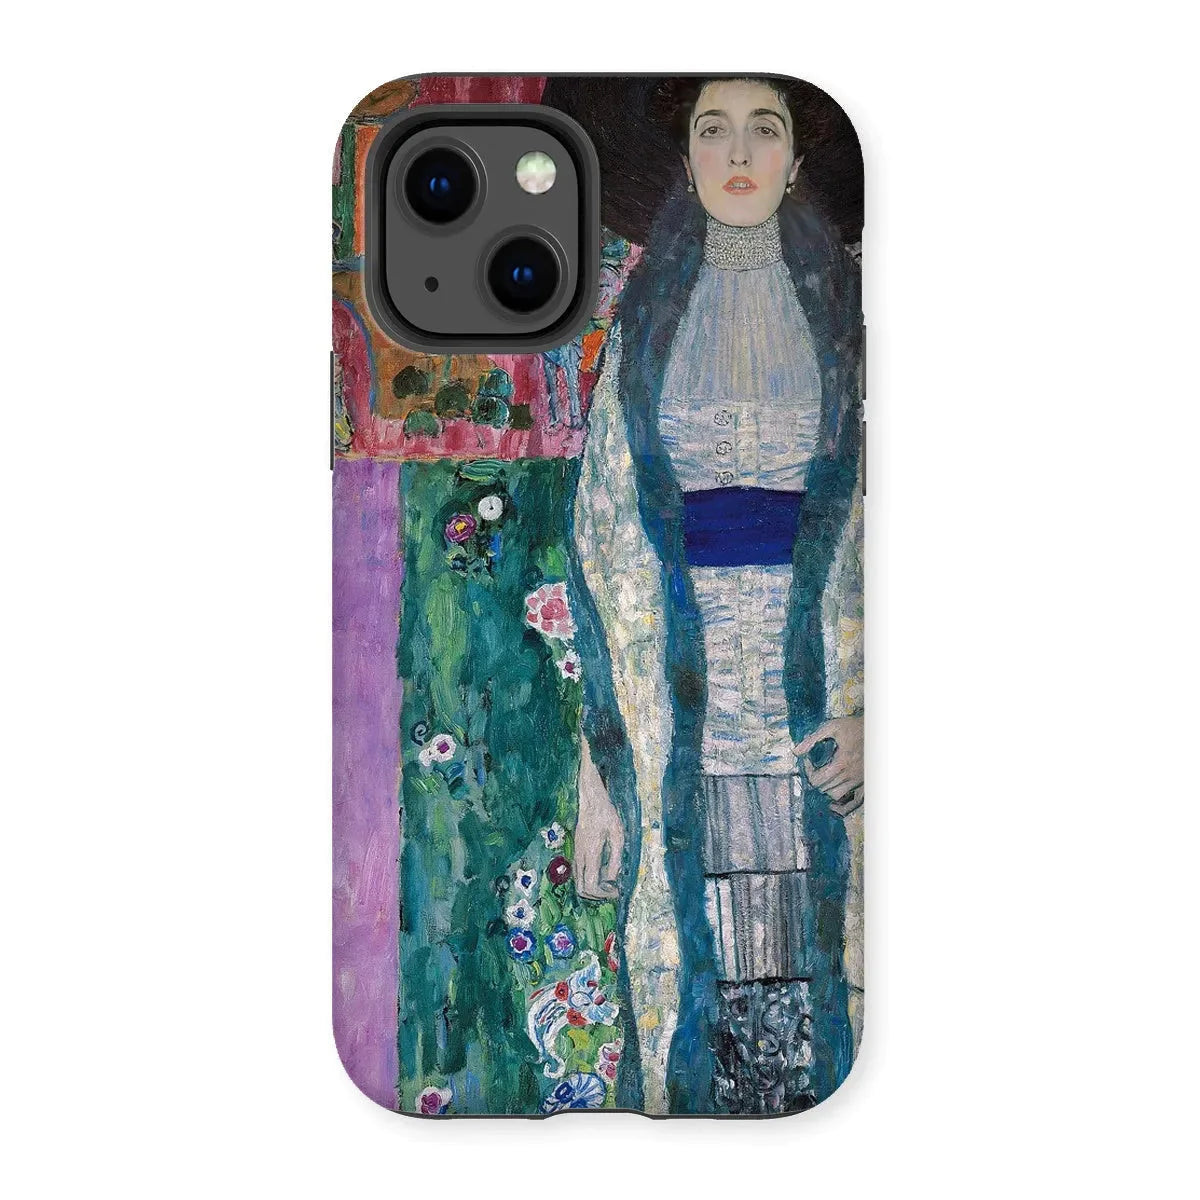 Adele Bloch - bauer - Gustav Klimt Aesthetic Art Phone Case - Iphone 13 / Matte - Mobile Phone Cases - Aesthetic Art